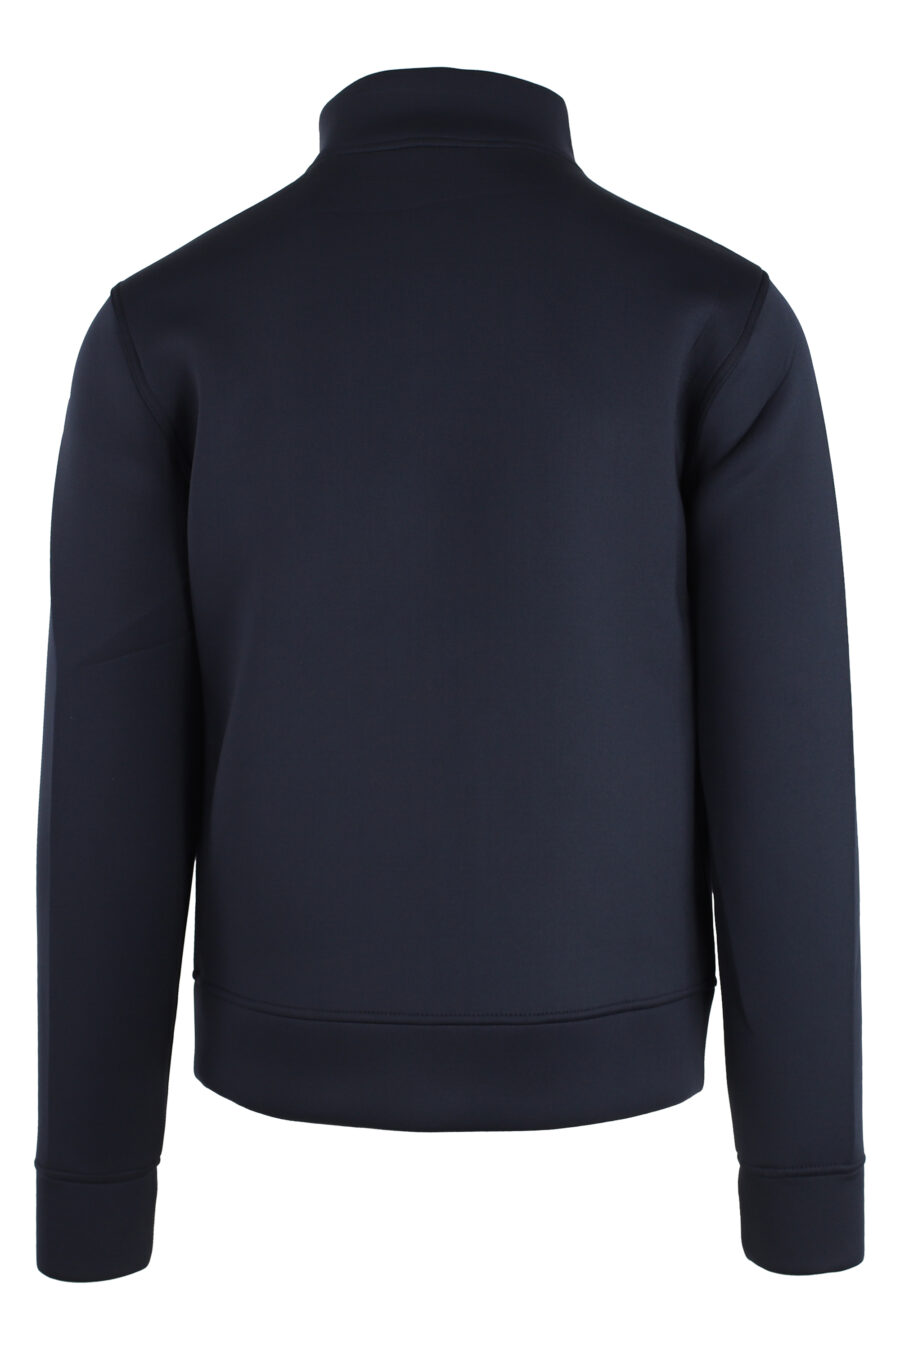 Dunkelblaues Neopren-Sweatshirt mit Reißverschluss - IMG 4773